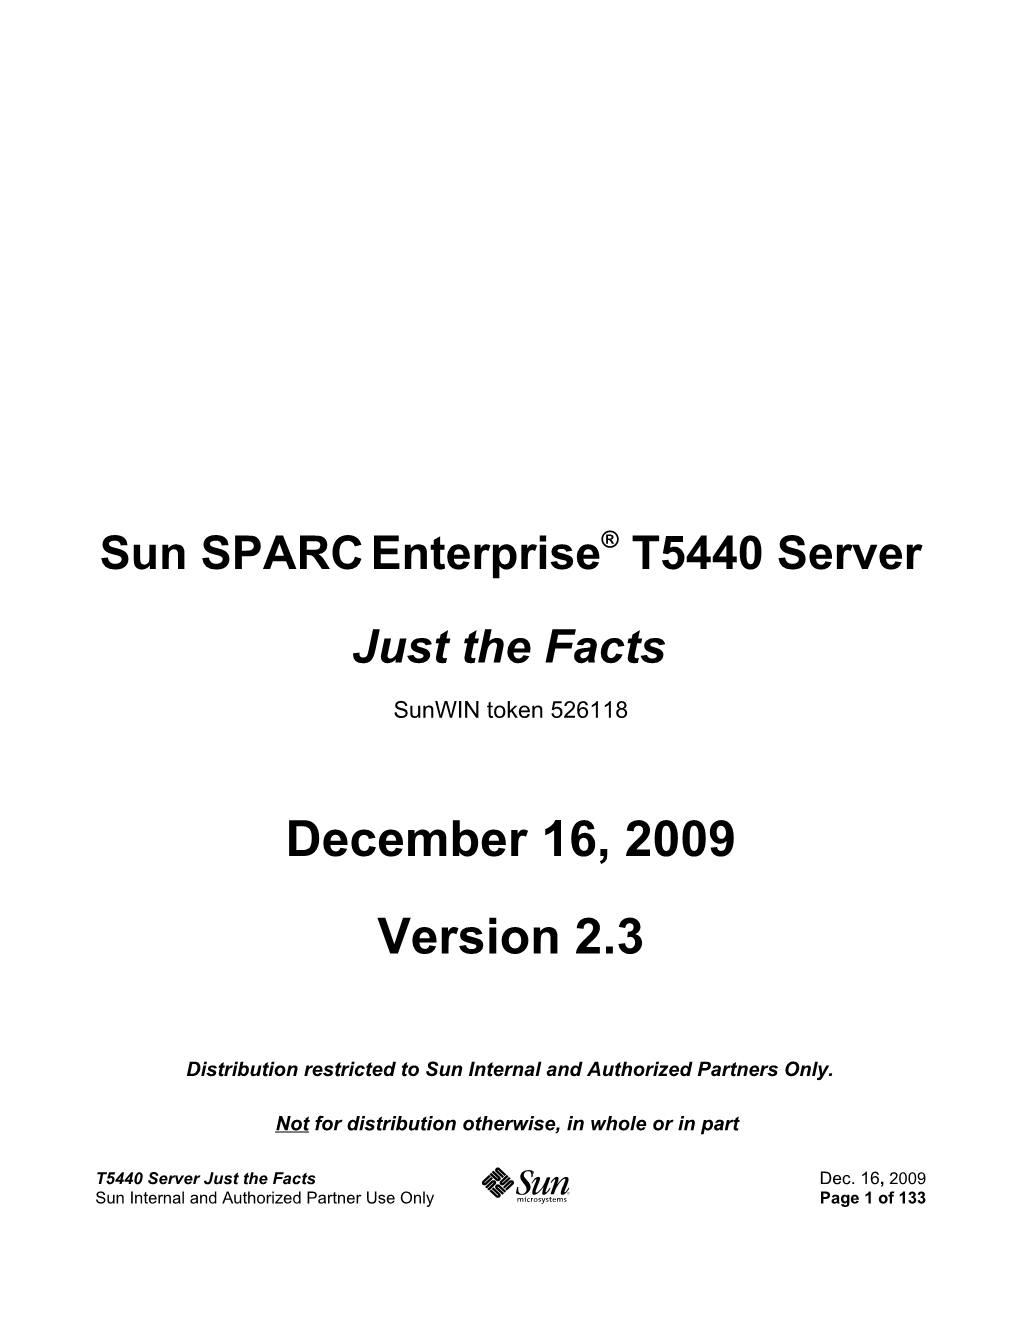 Sun SPARC Enterprise T5440 Servers